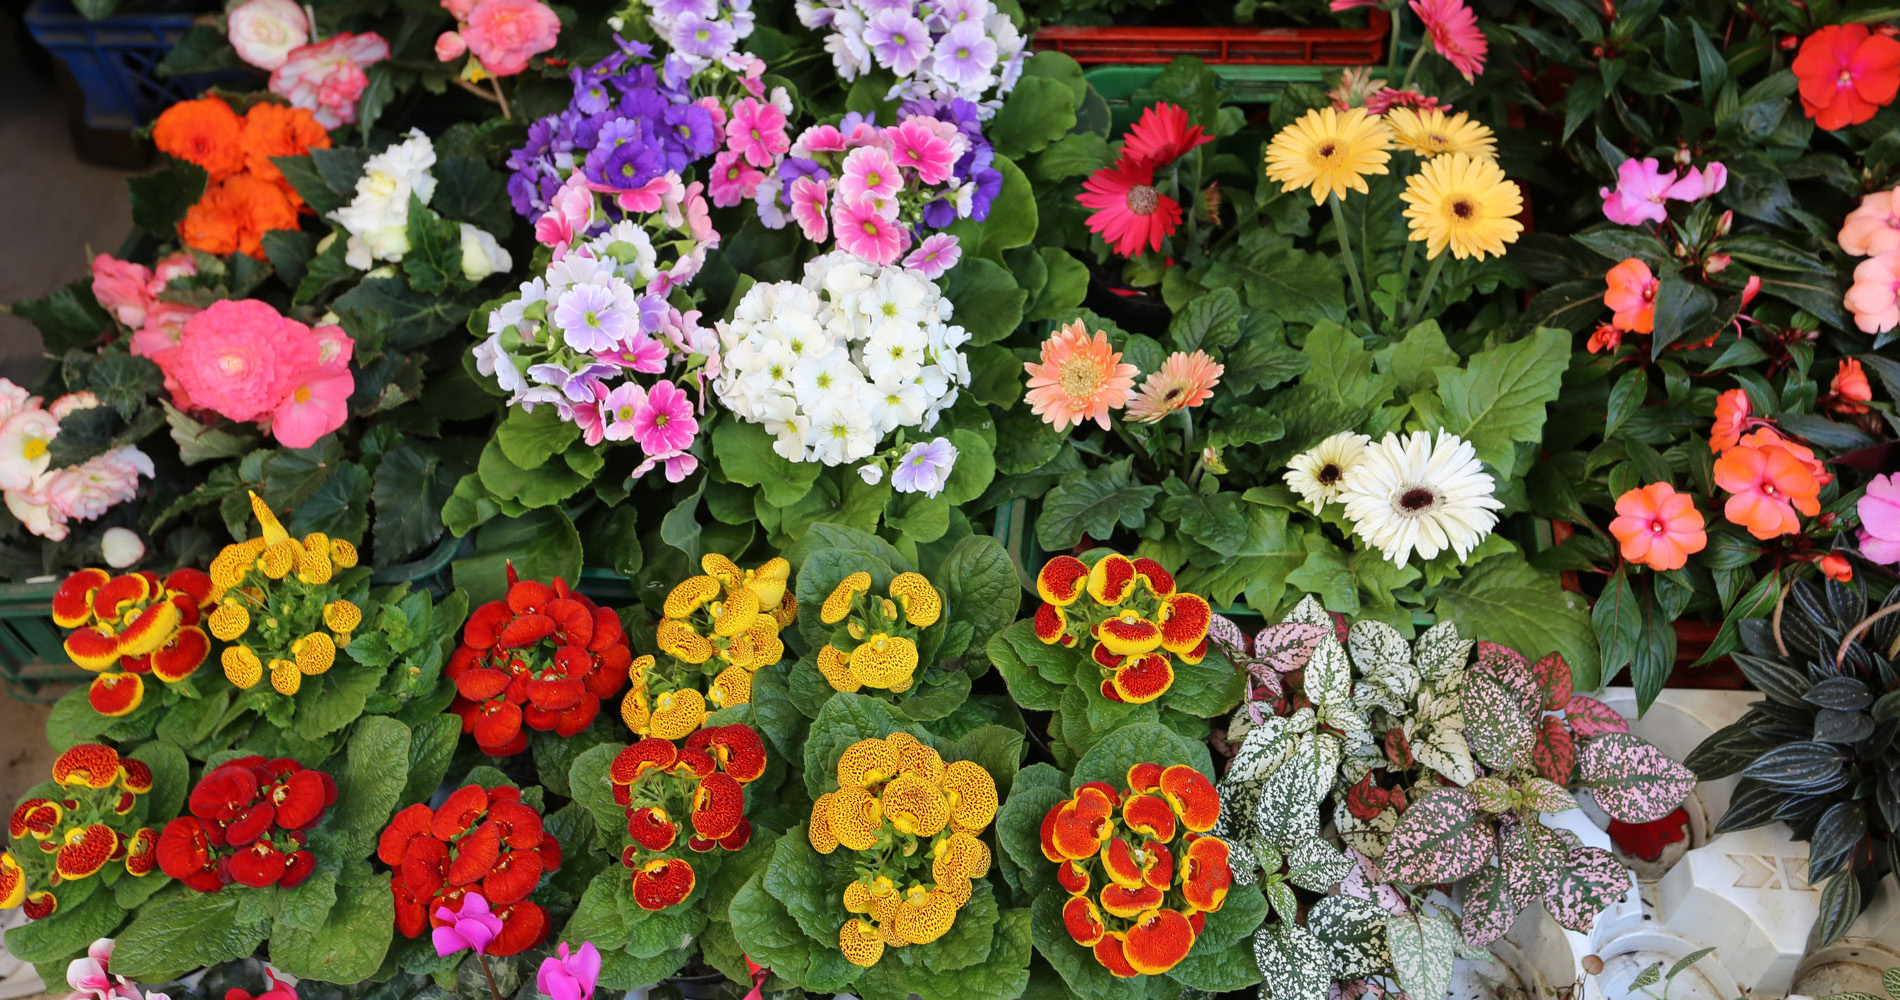 Le marché aux fleurs, une palette de couleurs